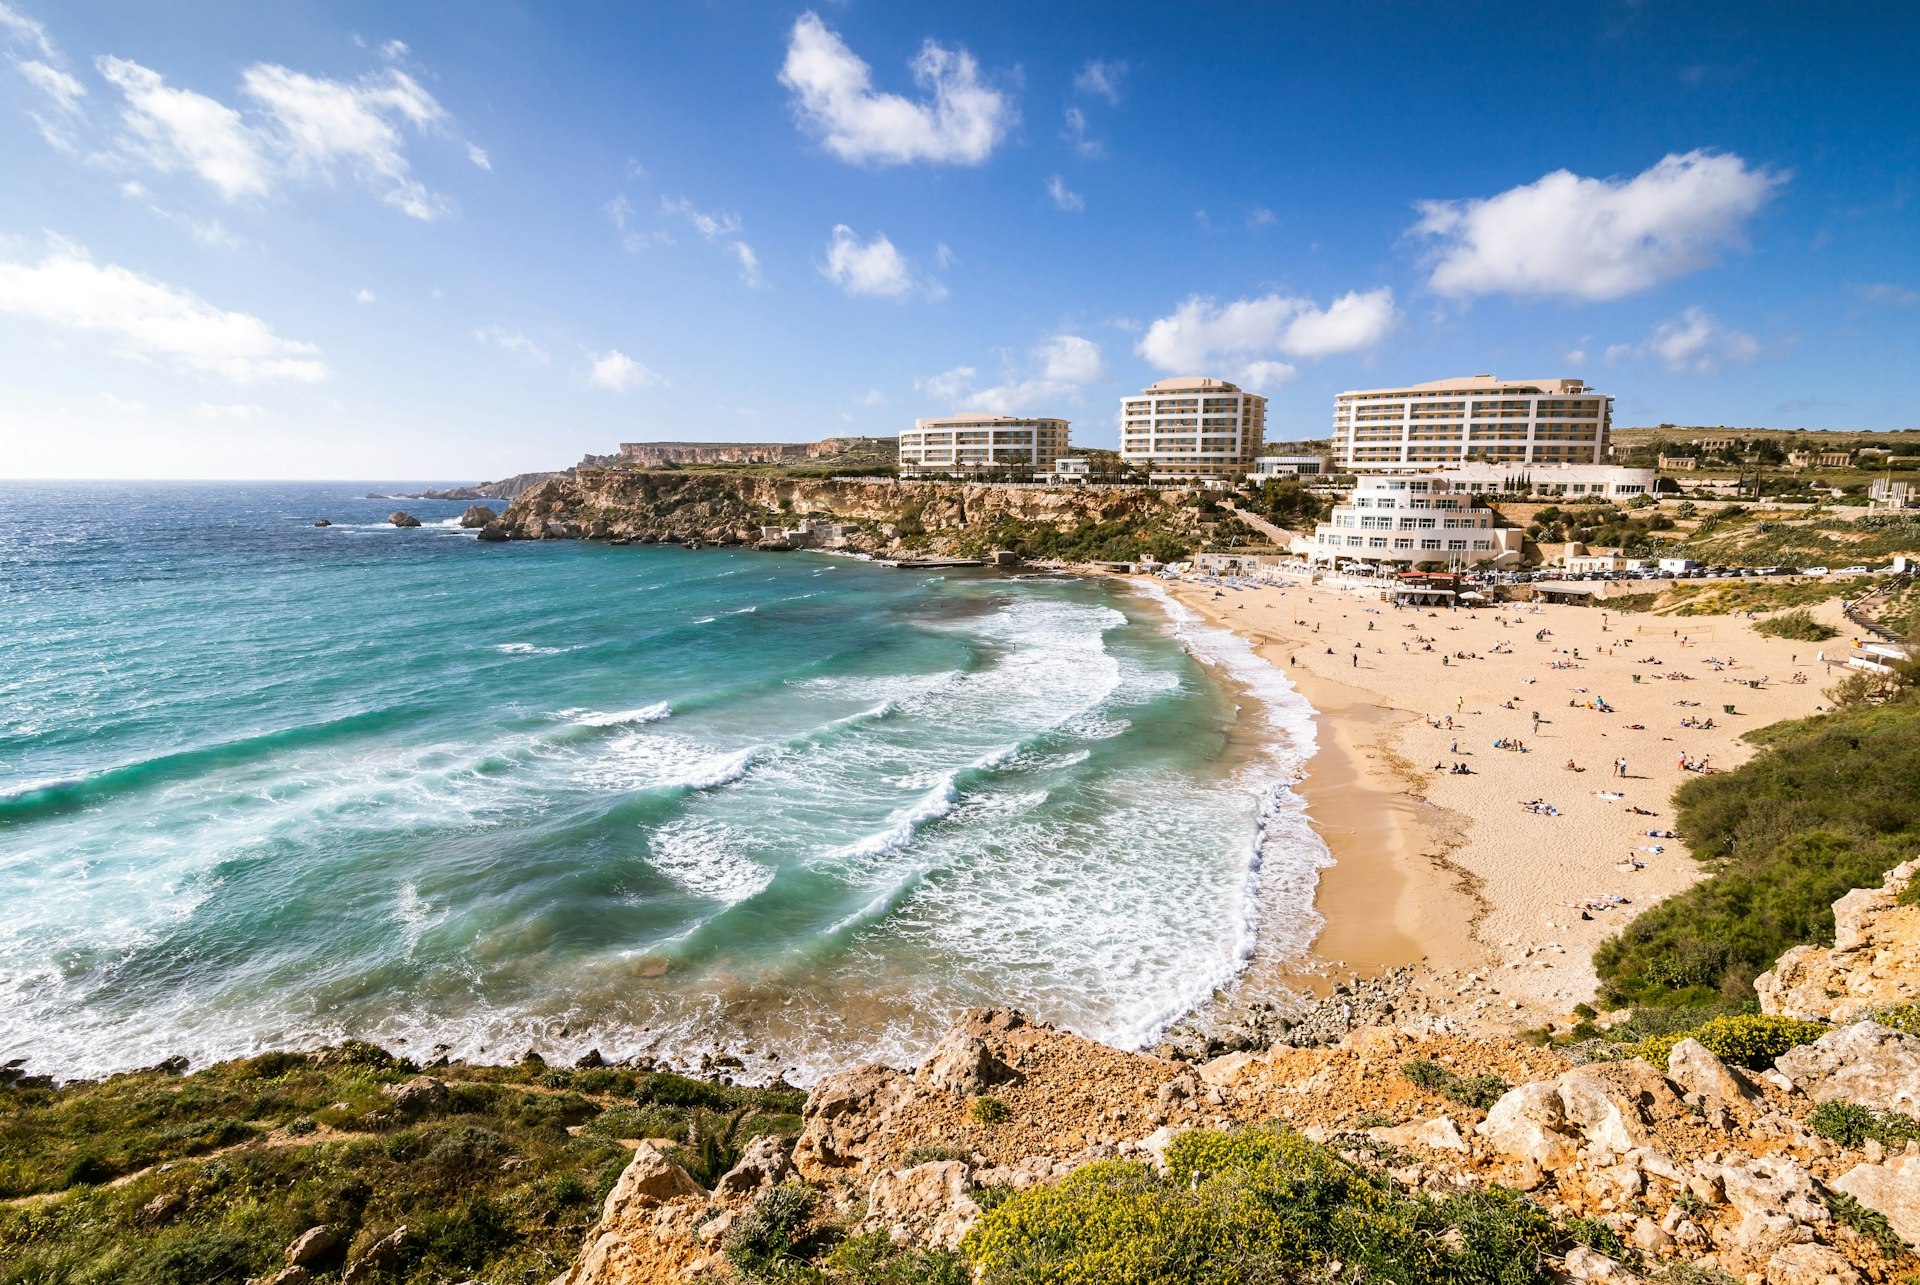 Beachgoers gather in the sun at Golden Bay in Malta